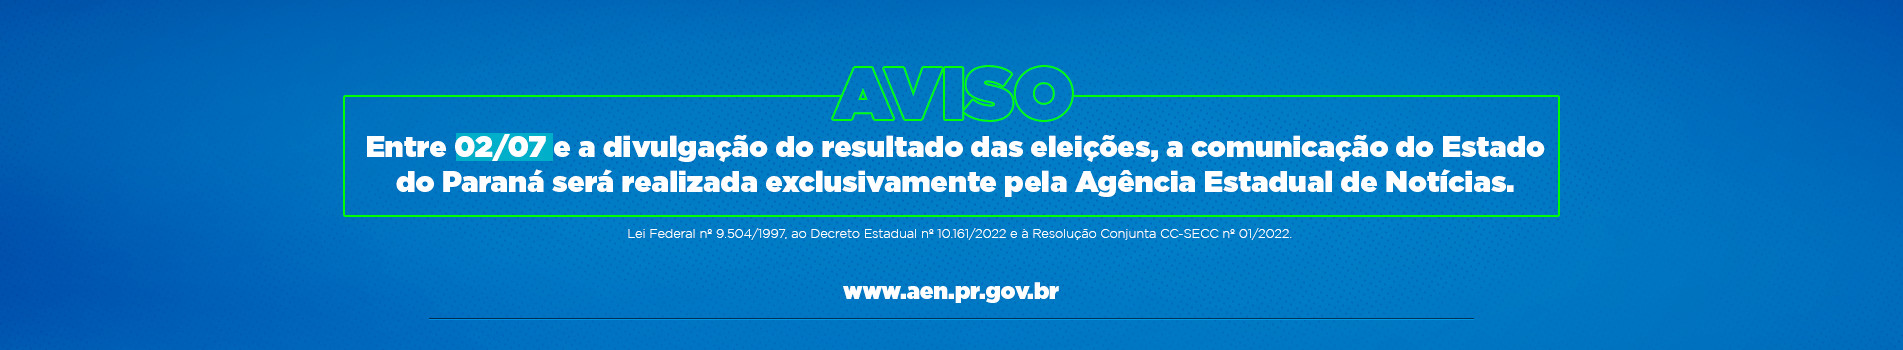 Aviso, entre 02/07 e a divulgação do resultado das eleições, a comunicação do Estado do Paraná será realizada exclusivamente pela Agência Estadual de Notícias.